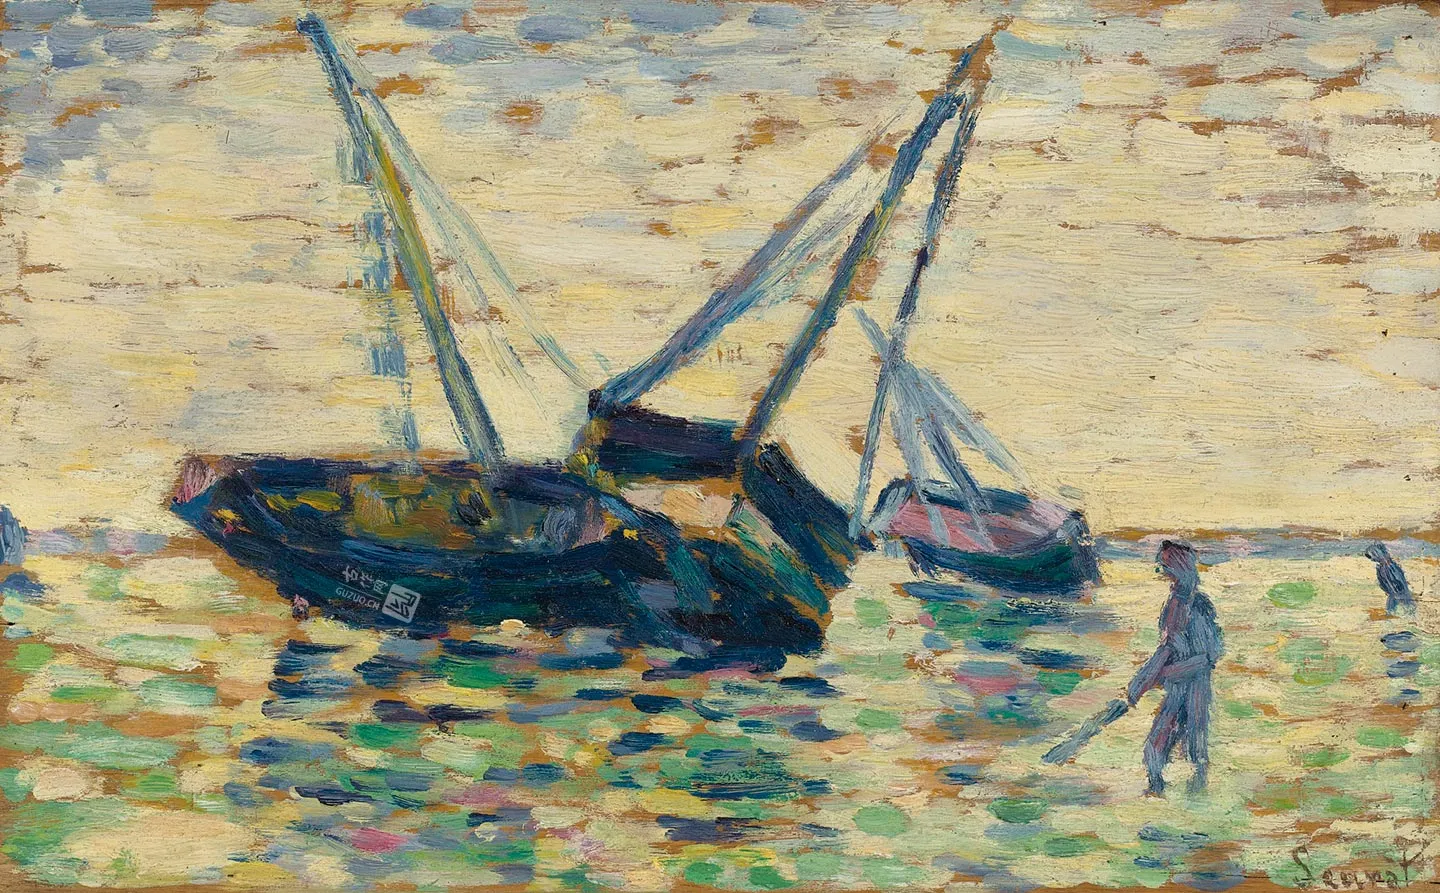 新印象派“修拉”油画作品《三艘船和一个水手》